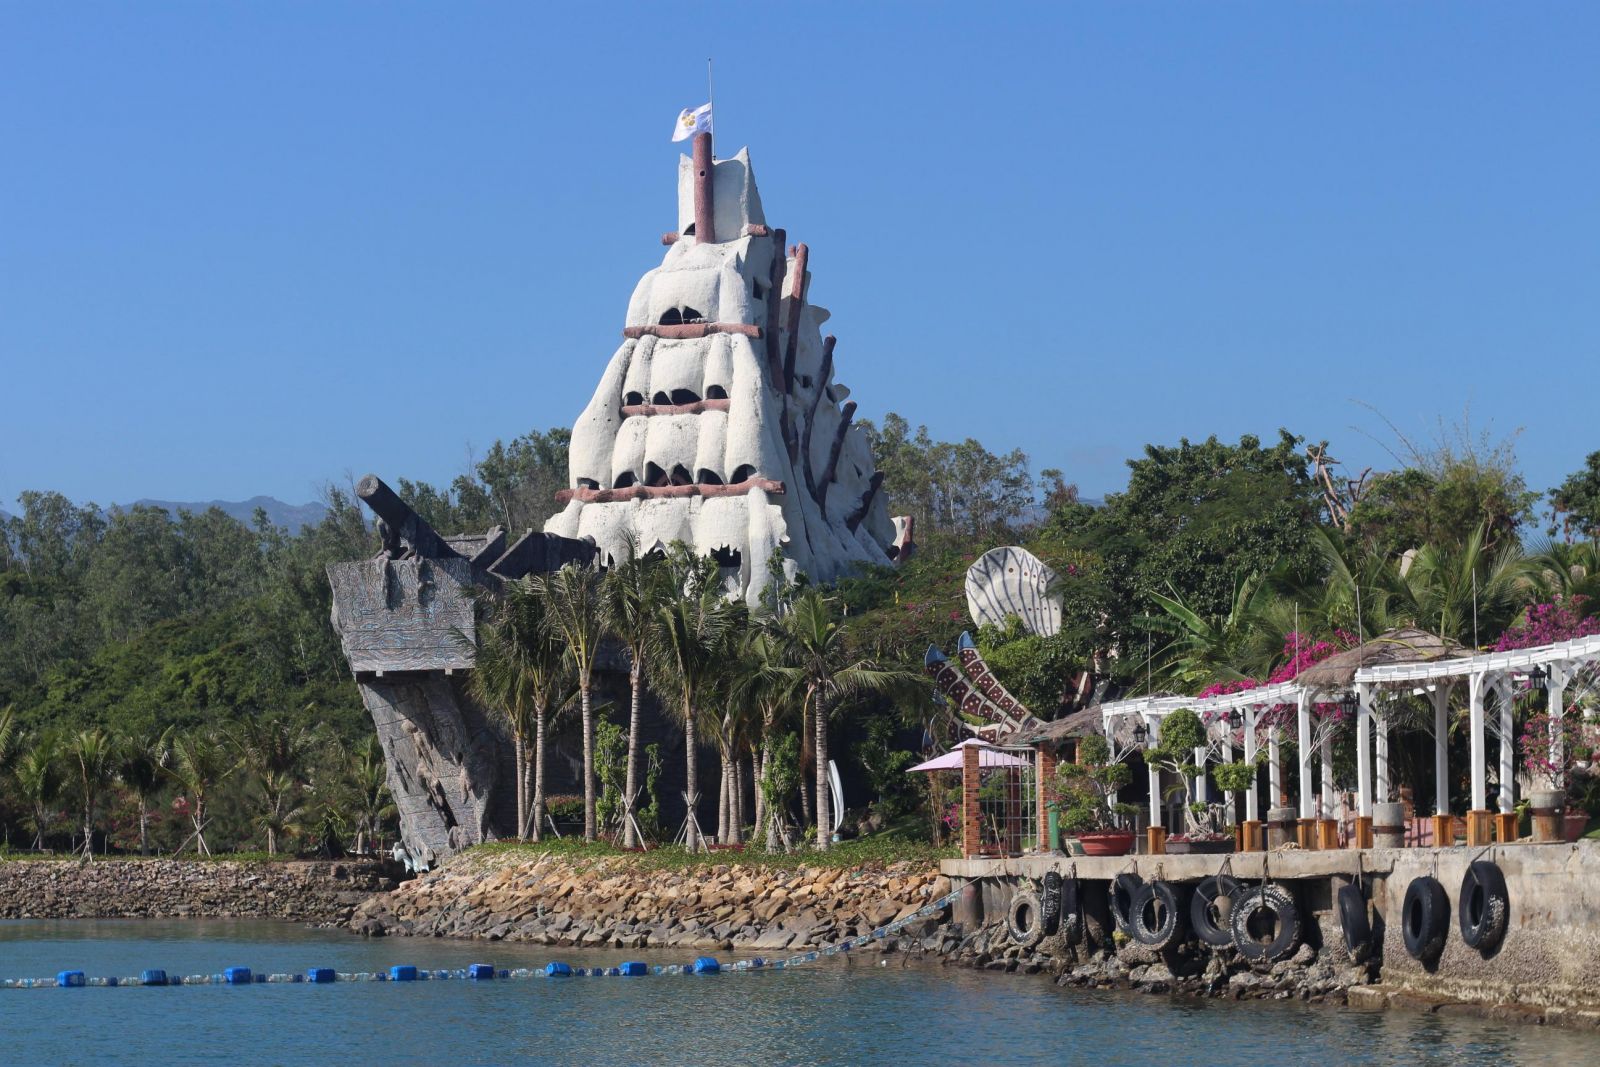 Khu du lịch Sỏi Island - điểm đến check-in thú vị hút khách du lịch Nha Trang - Ảnh 1.